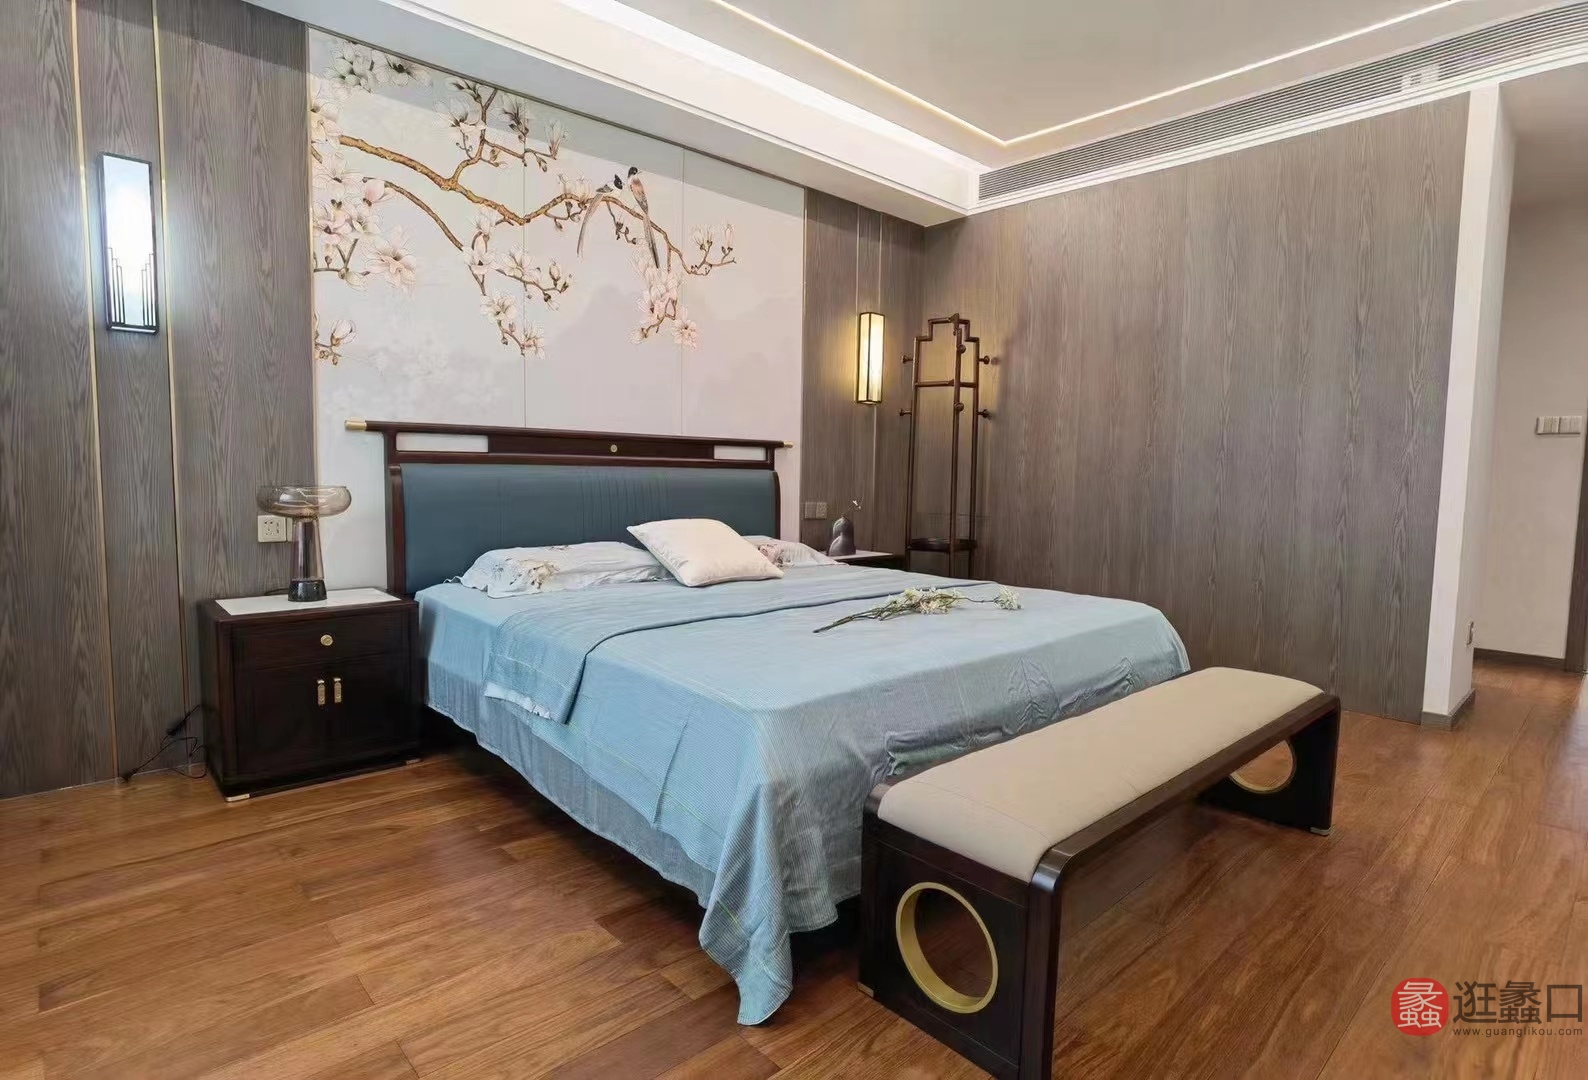 阅界新中式家具卧室床yj058